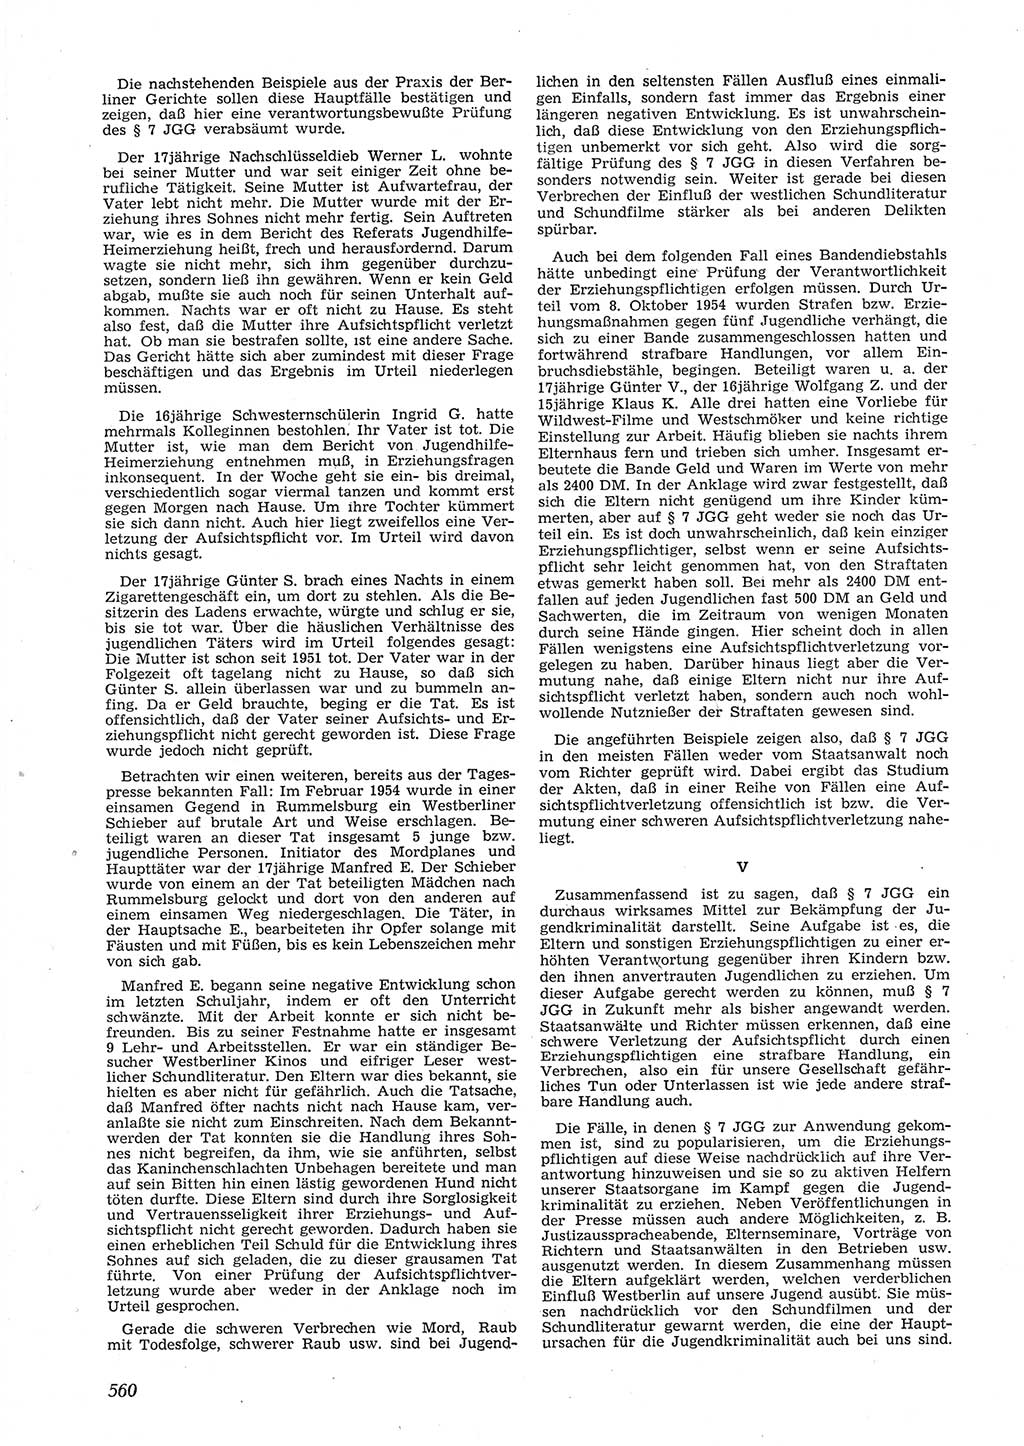 Neue Justiz (NJ), Zeitschrift für Recht und Rechtswissenschaft [Deutsche Demokratische Republik (DDR)], 9. Jahrgang 1955, Seite 560 (NJ DDR 1955, S. 560)